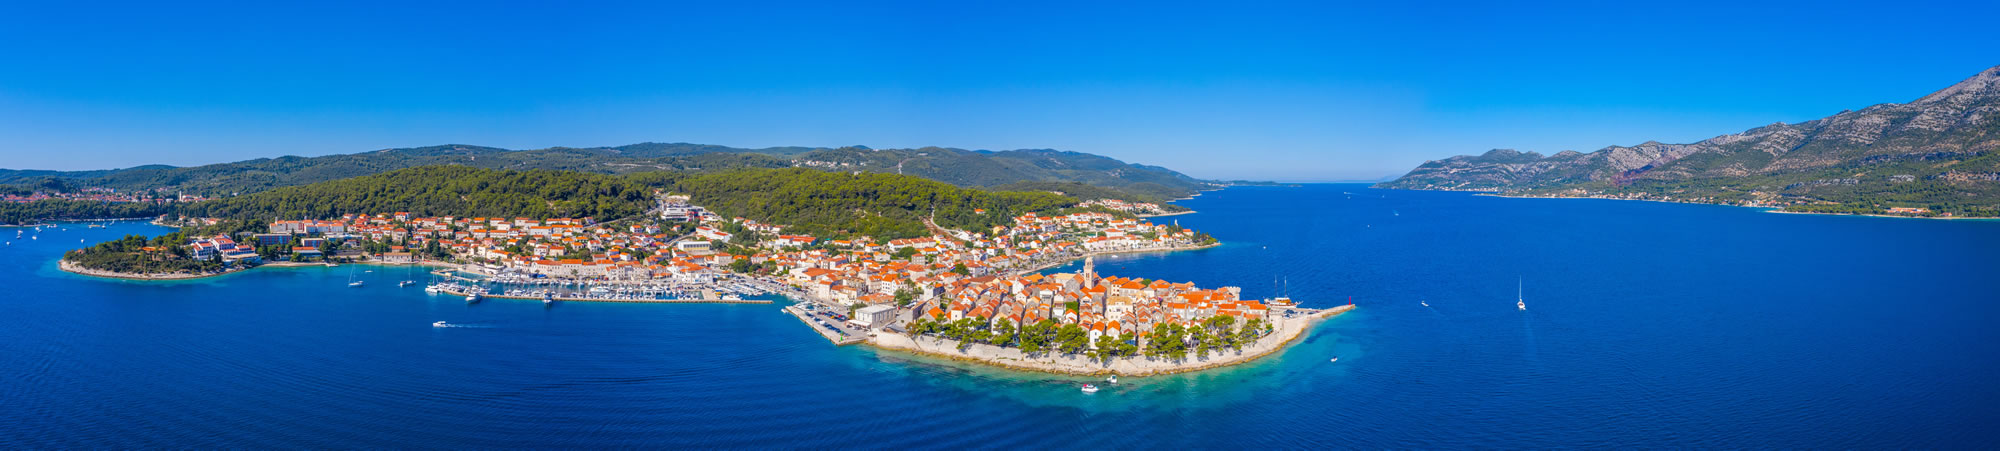 Kroatische Küste Korcula